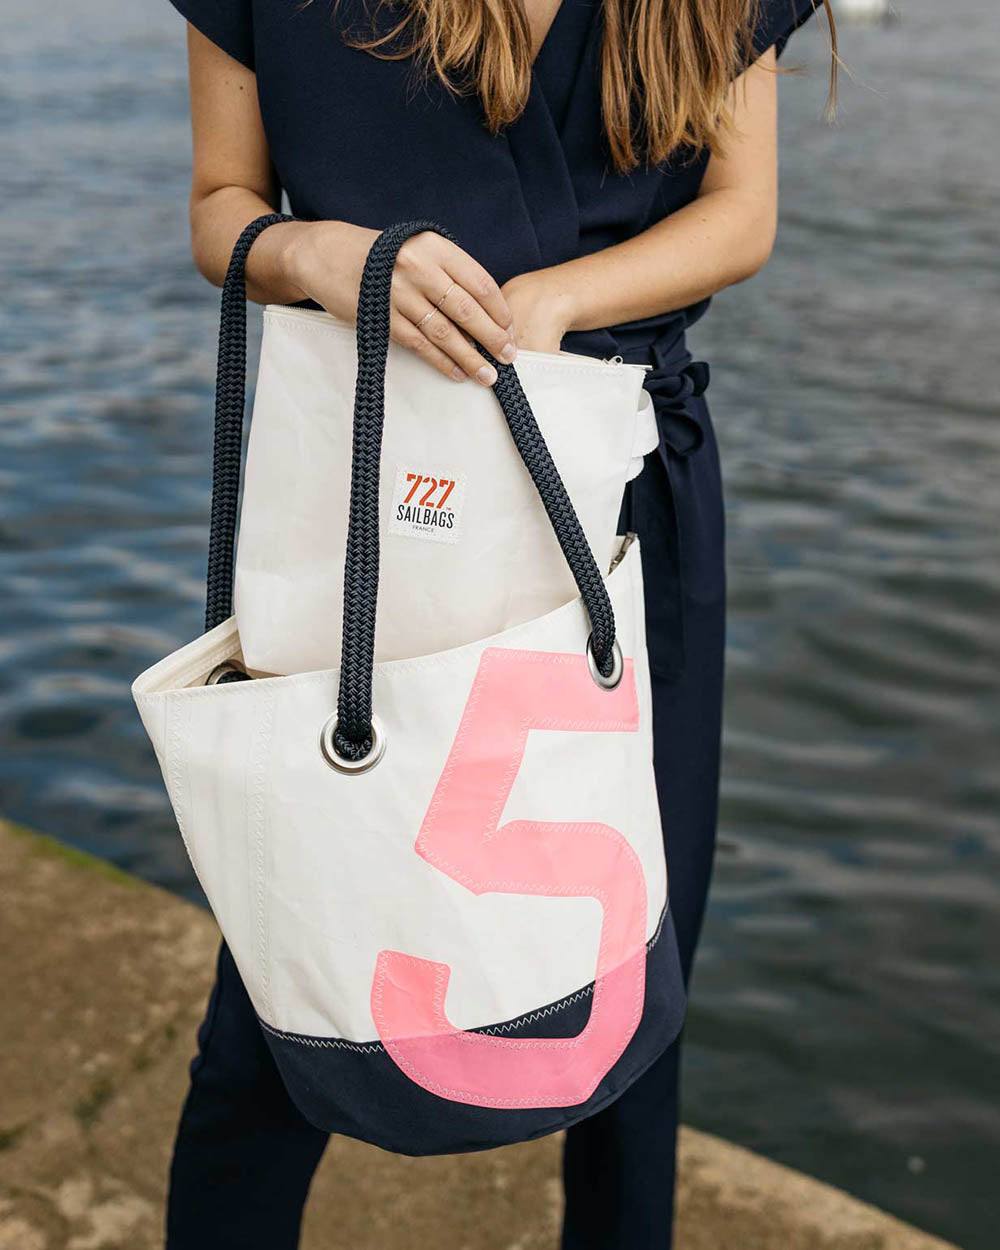 Damen Handtasche "Sandy" by 727 Sailbags / Segeltuch weiß / Boden navy / Motiv 5 pink